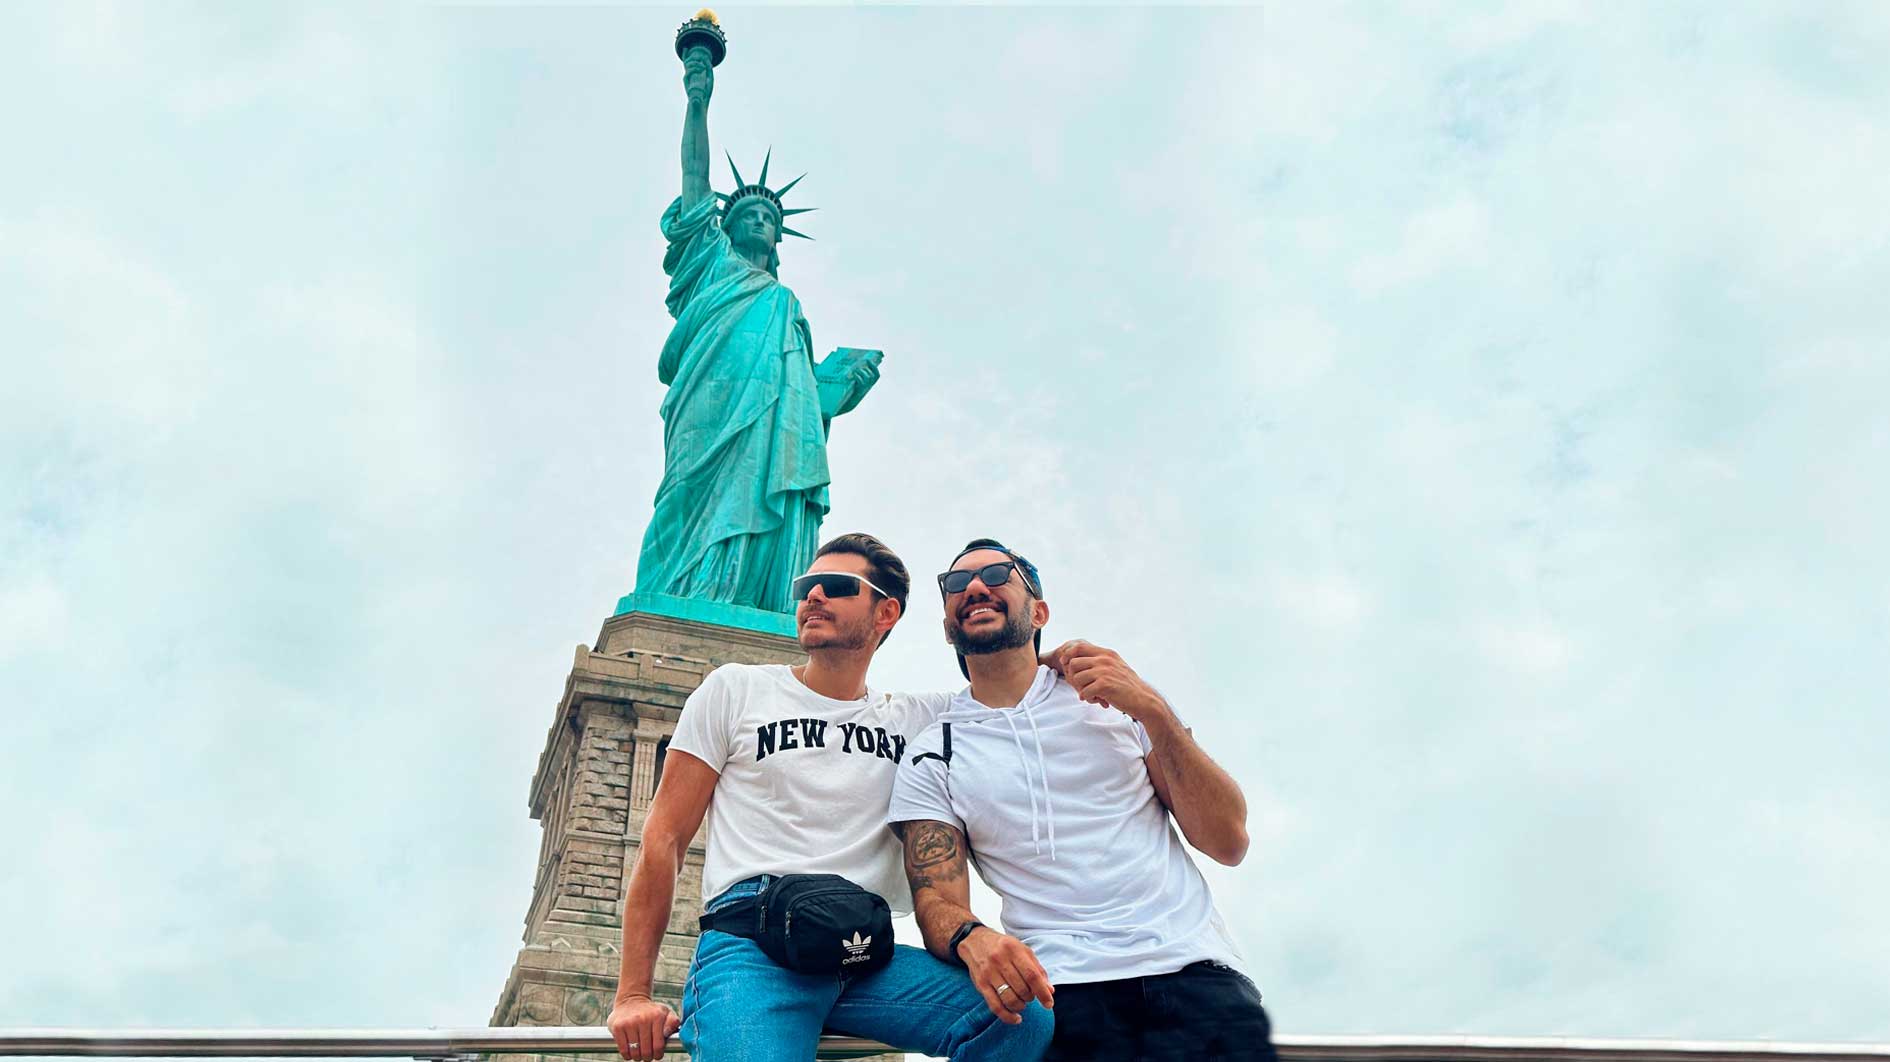 Franklin David e Vitor Vianna se encantam pela Estátua da Liberdade, em Nova York. Foto: Arquivo pessoal